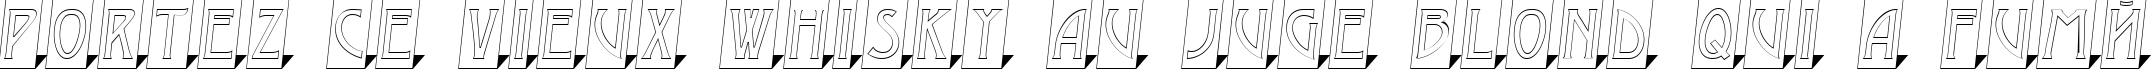 Пример написания шрифтом a_ModernoCmOtl3DSh текста на французском